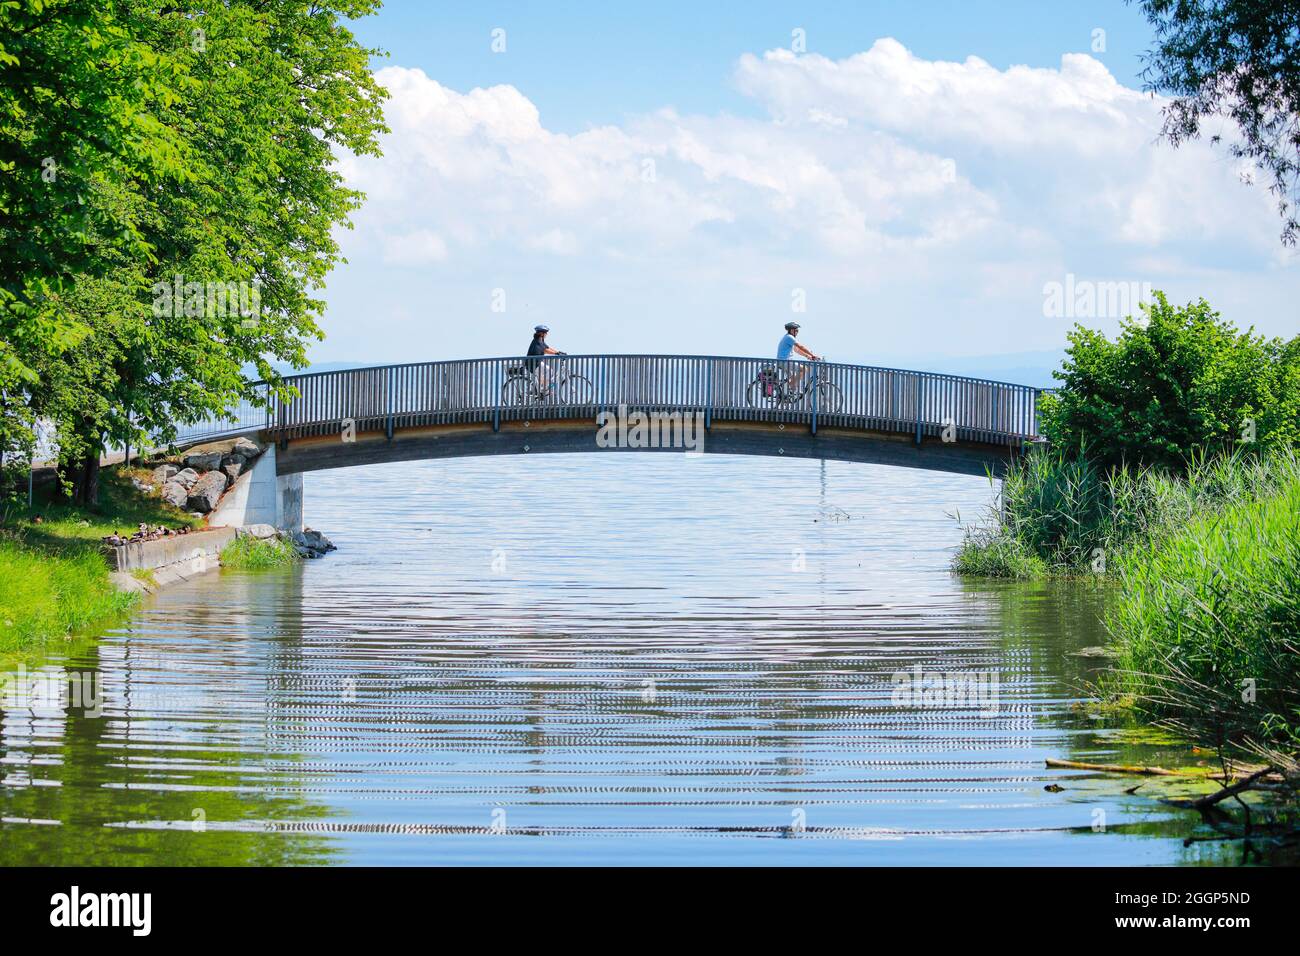 Zwei Fahrradfahrer überqueren die Brücke über den Bach Aach bei der Mündung in den Bodensee, Arbon im Thurgau, Schweiz Stock Photo